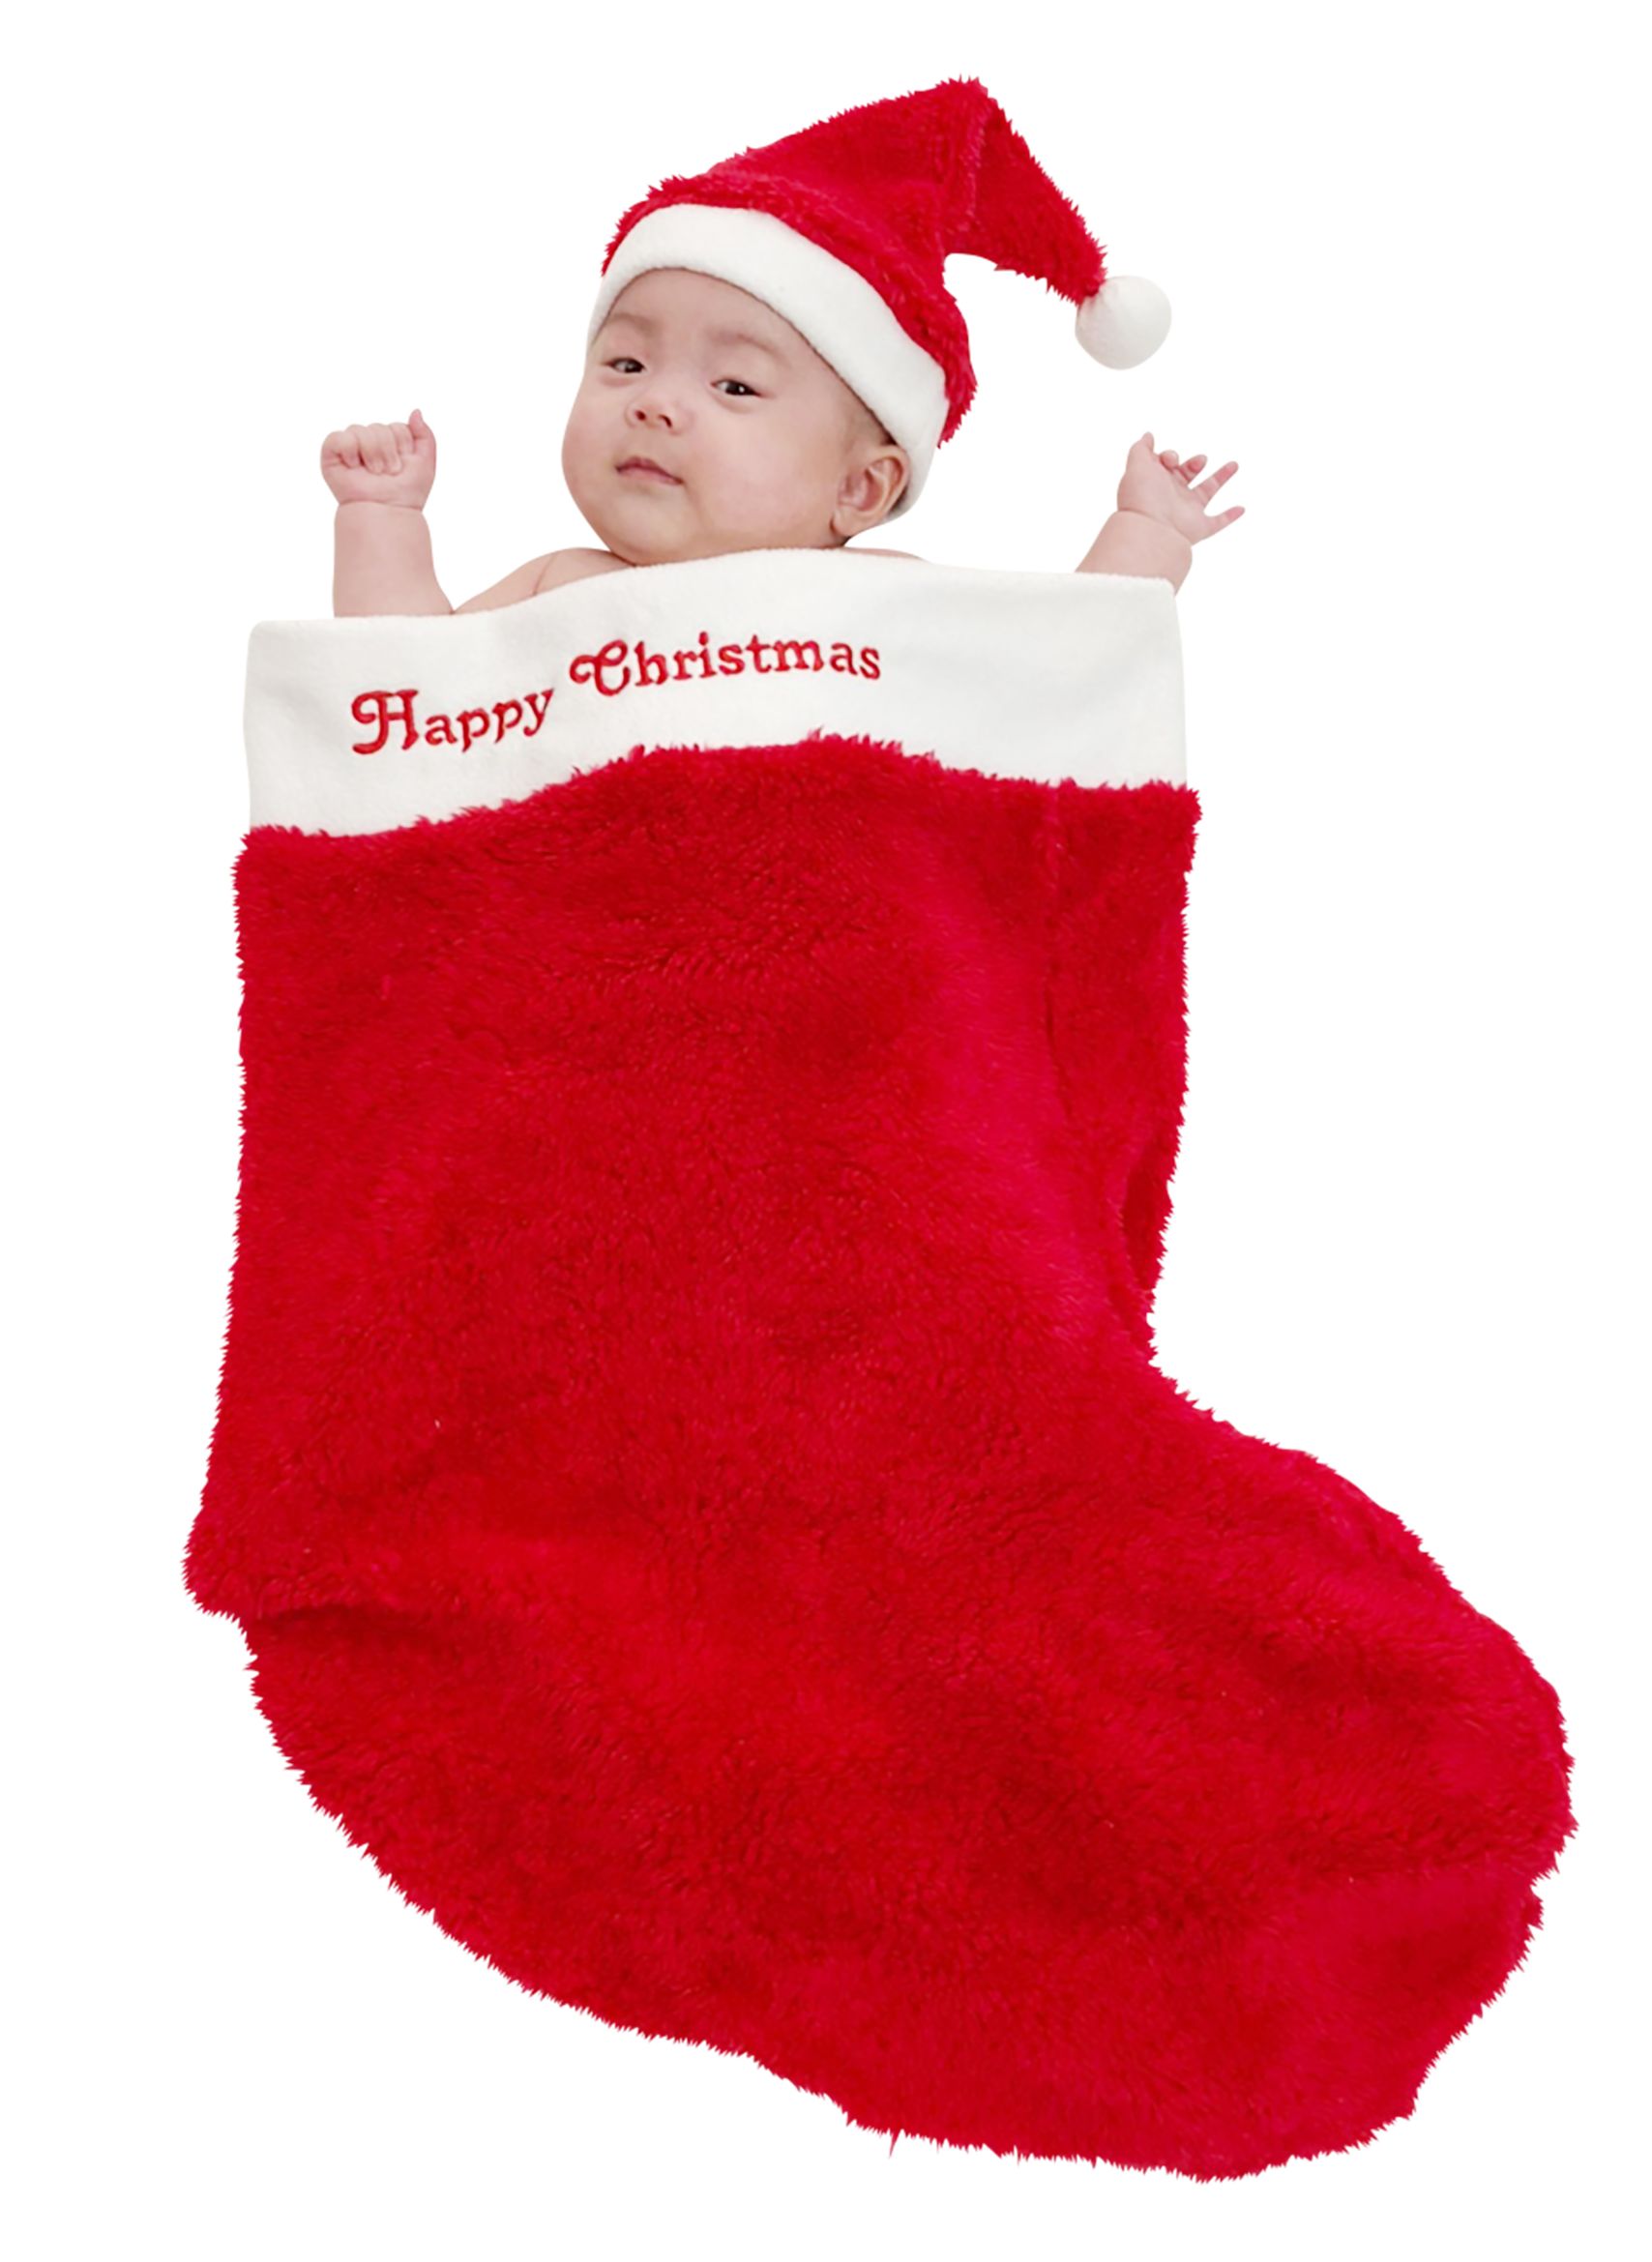 クリスマスビッグソックス 大きい靴下 ベビー 赤ちゃん 大人用 簡易仮装 クリスマス